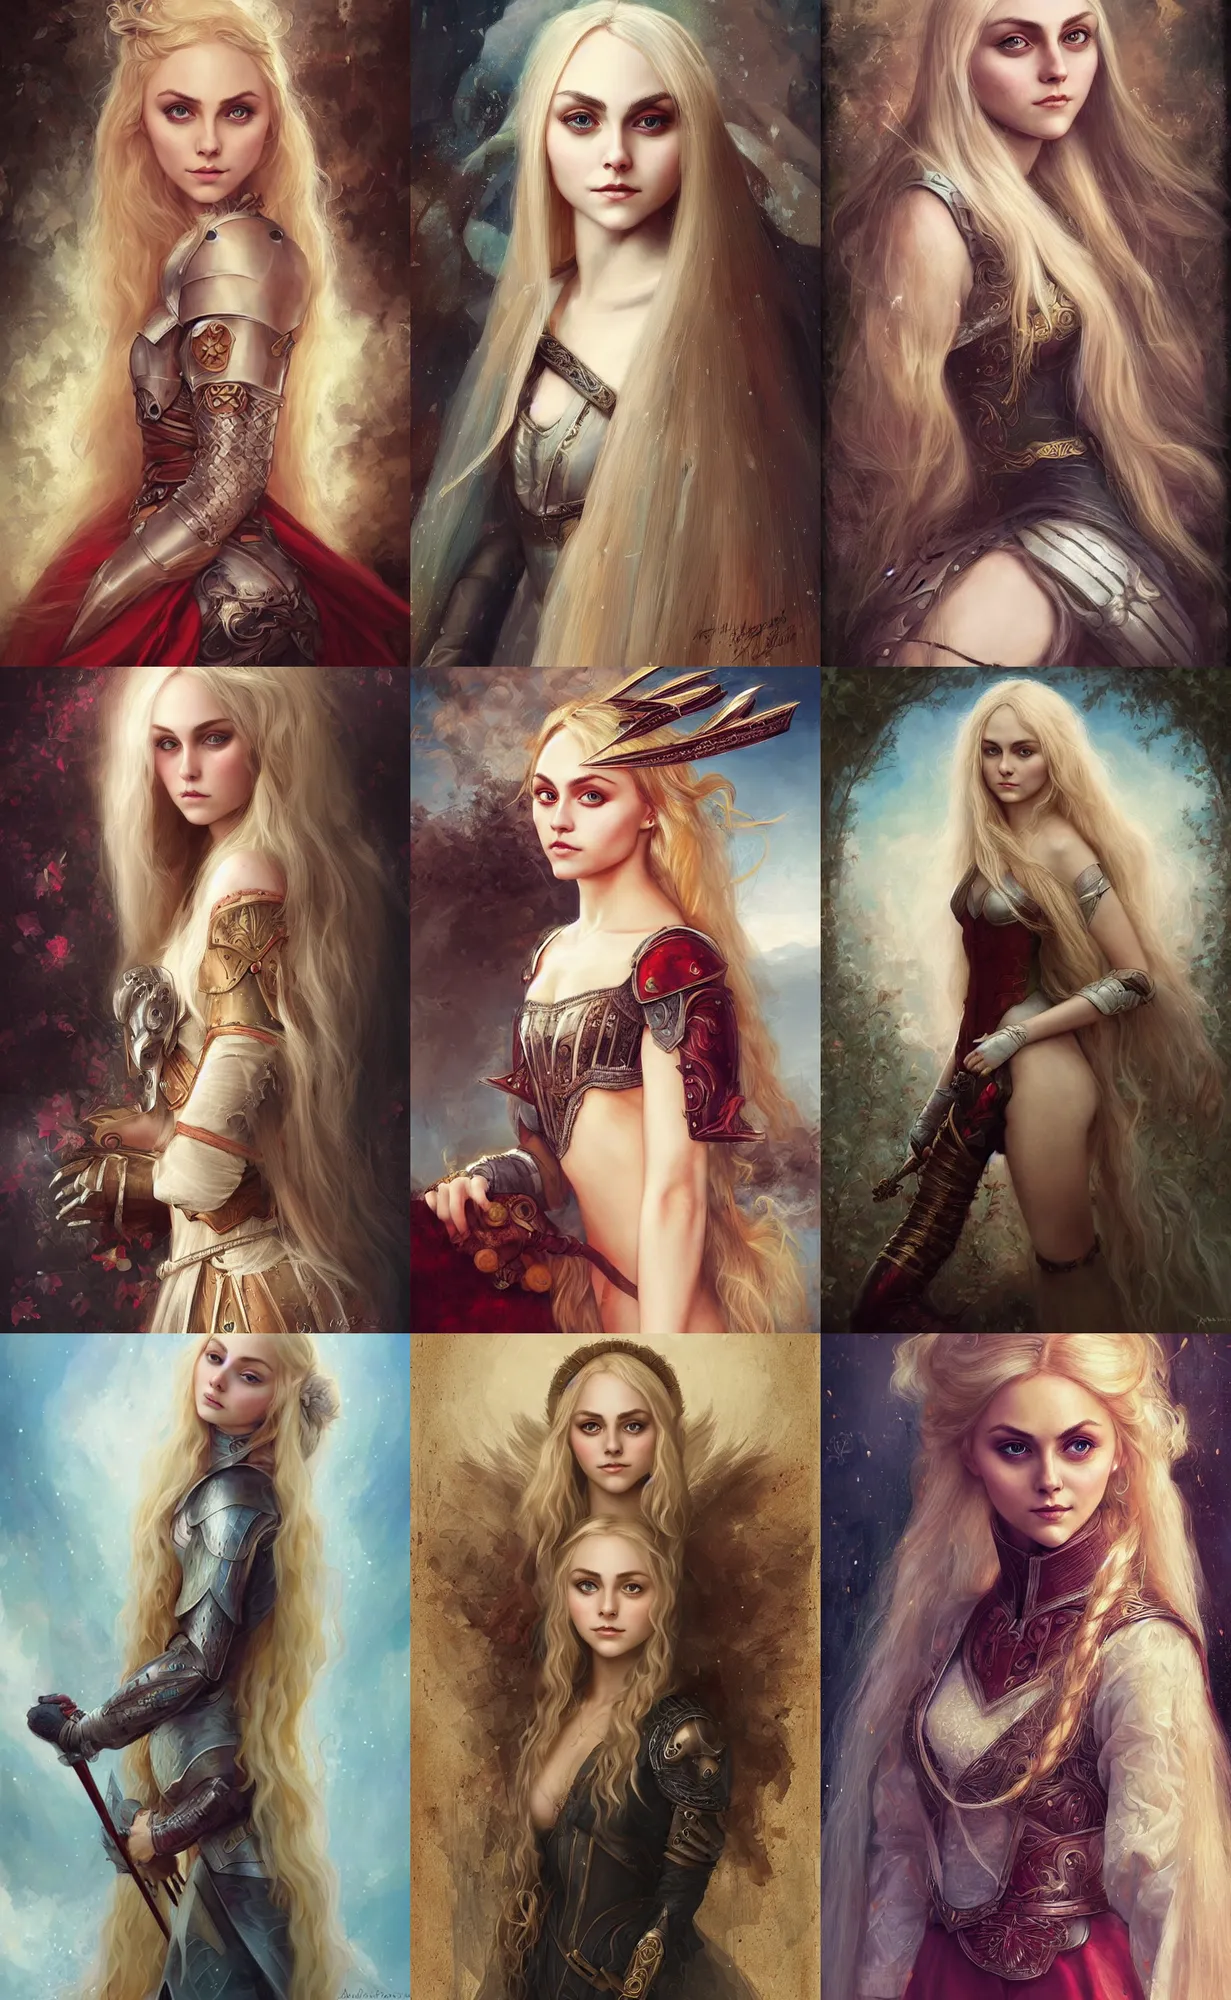 Prompt: portrait annasophia robb, long blond hair, medieval armour, anna dittmann, bouguereau